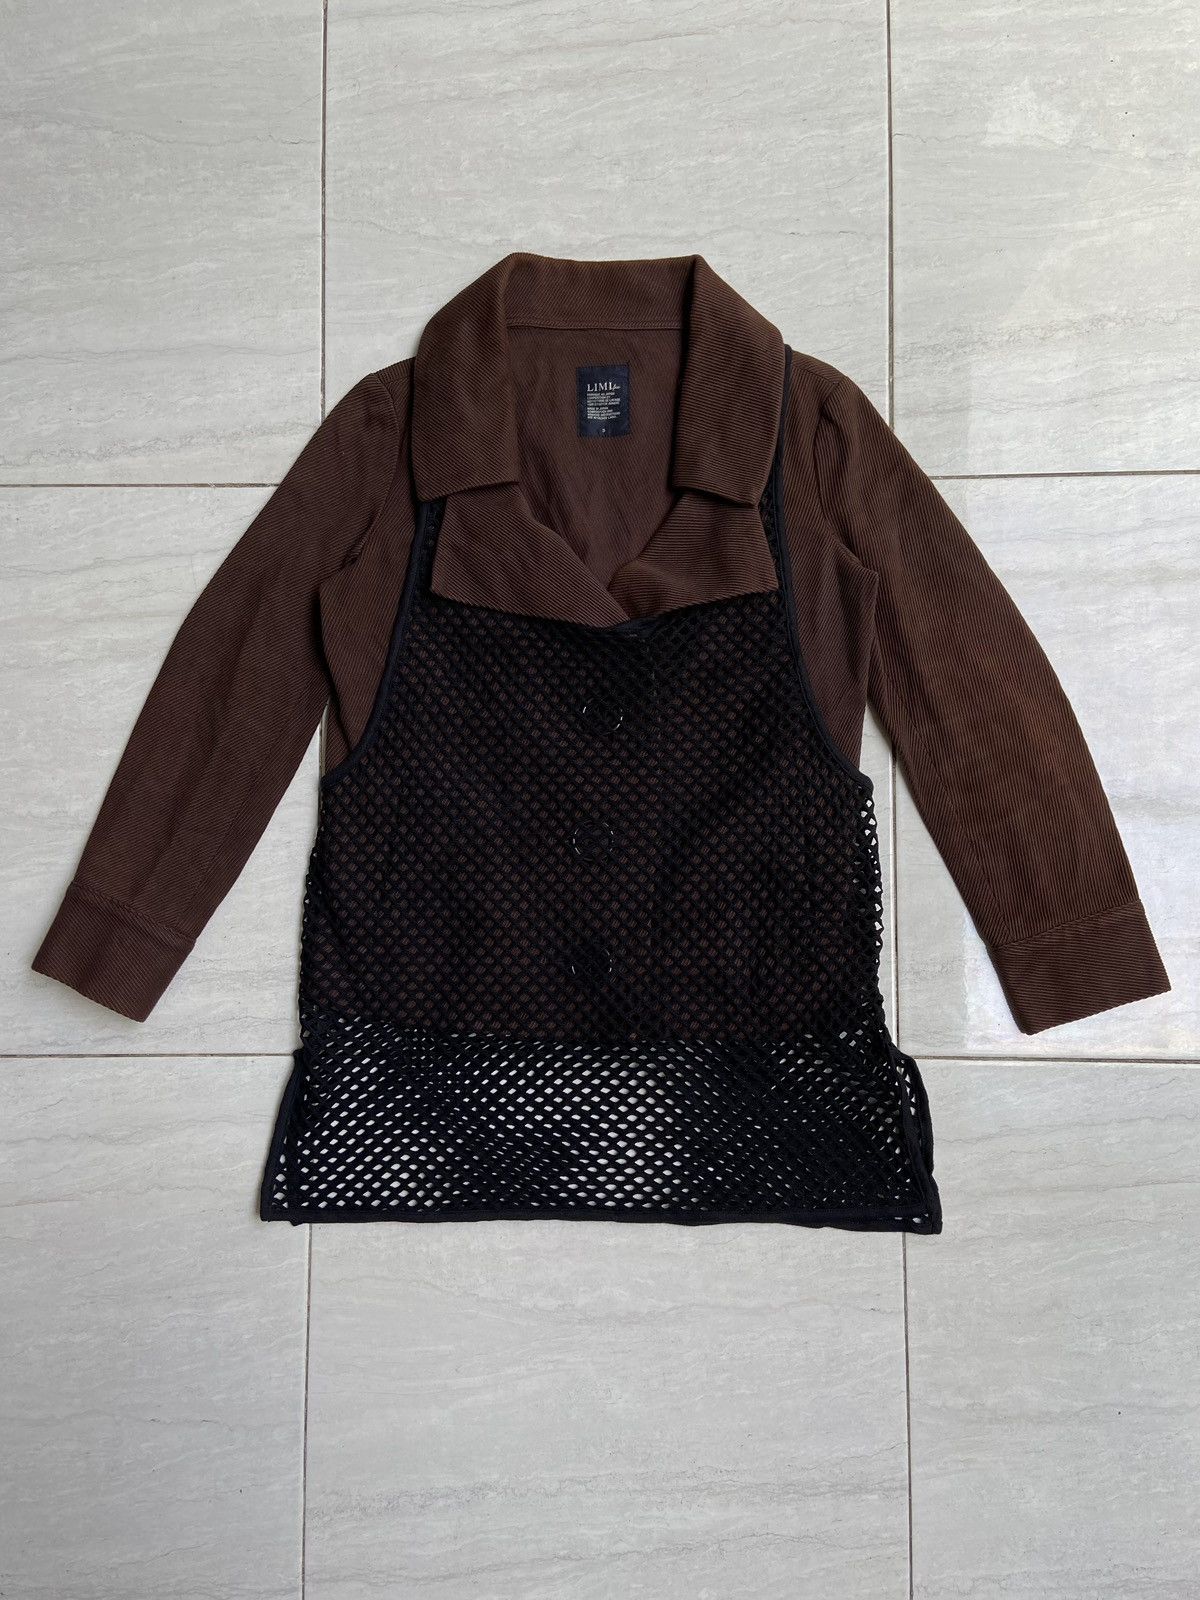 Yohji Yamamoto LIMI FEU Brown Blazer Vest Size US S / EU 44-46 / 1 - 6 Thumbnail